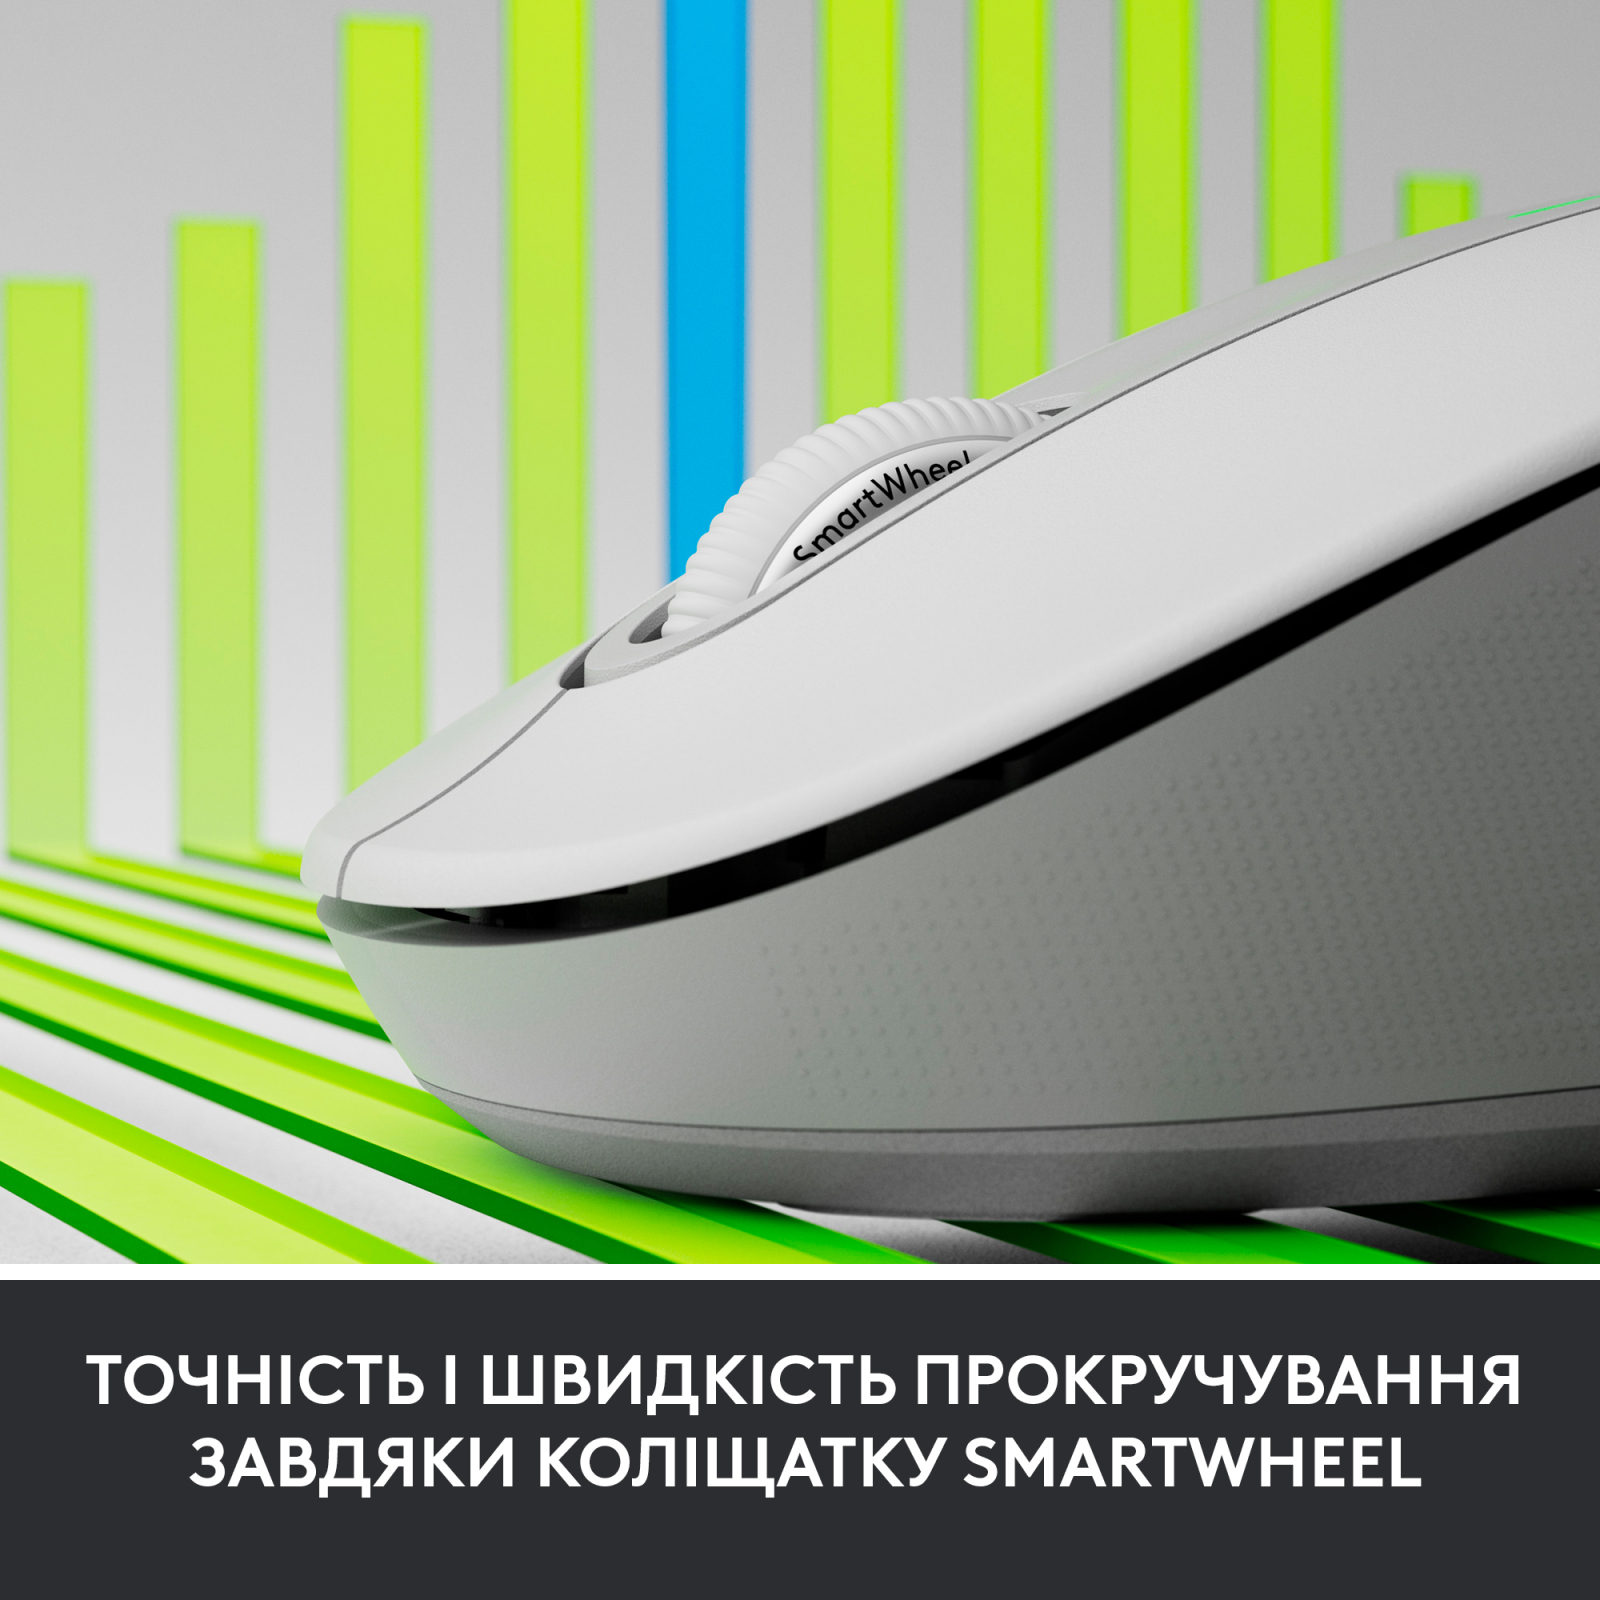 Мышка Logitech Signature M650 Wireless for Business Graphite (910-006274) изображение 5